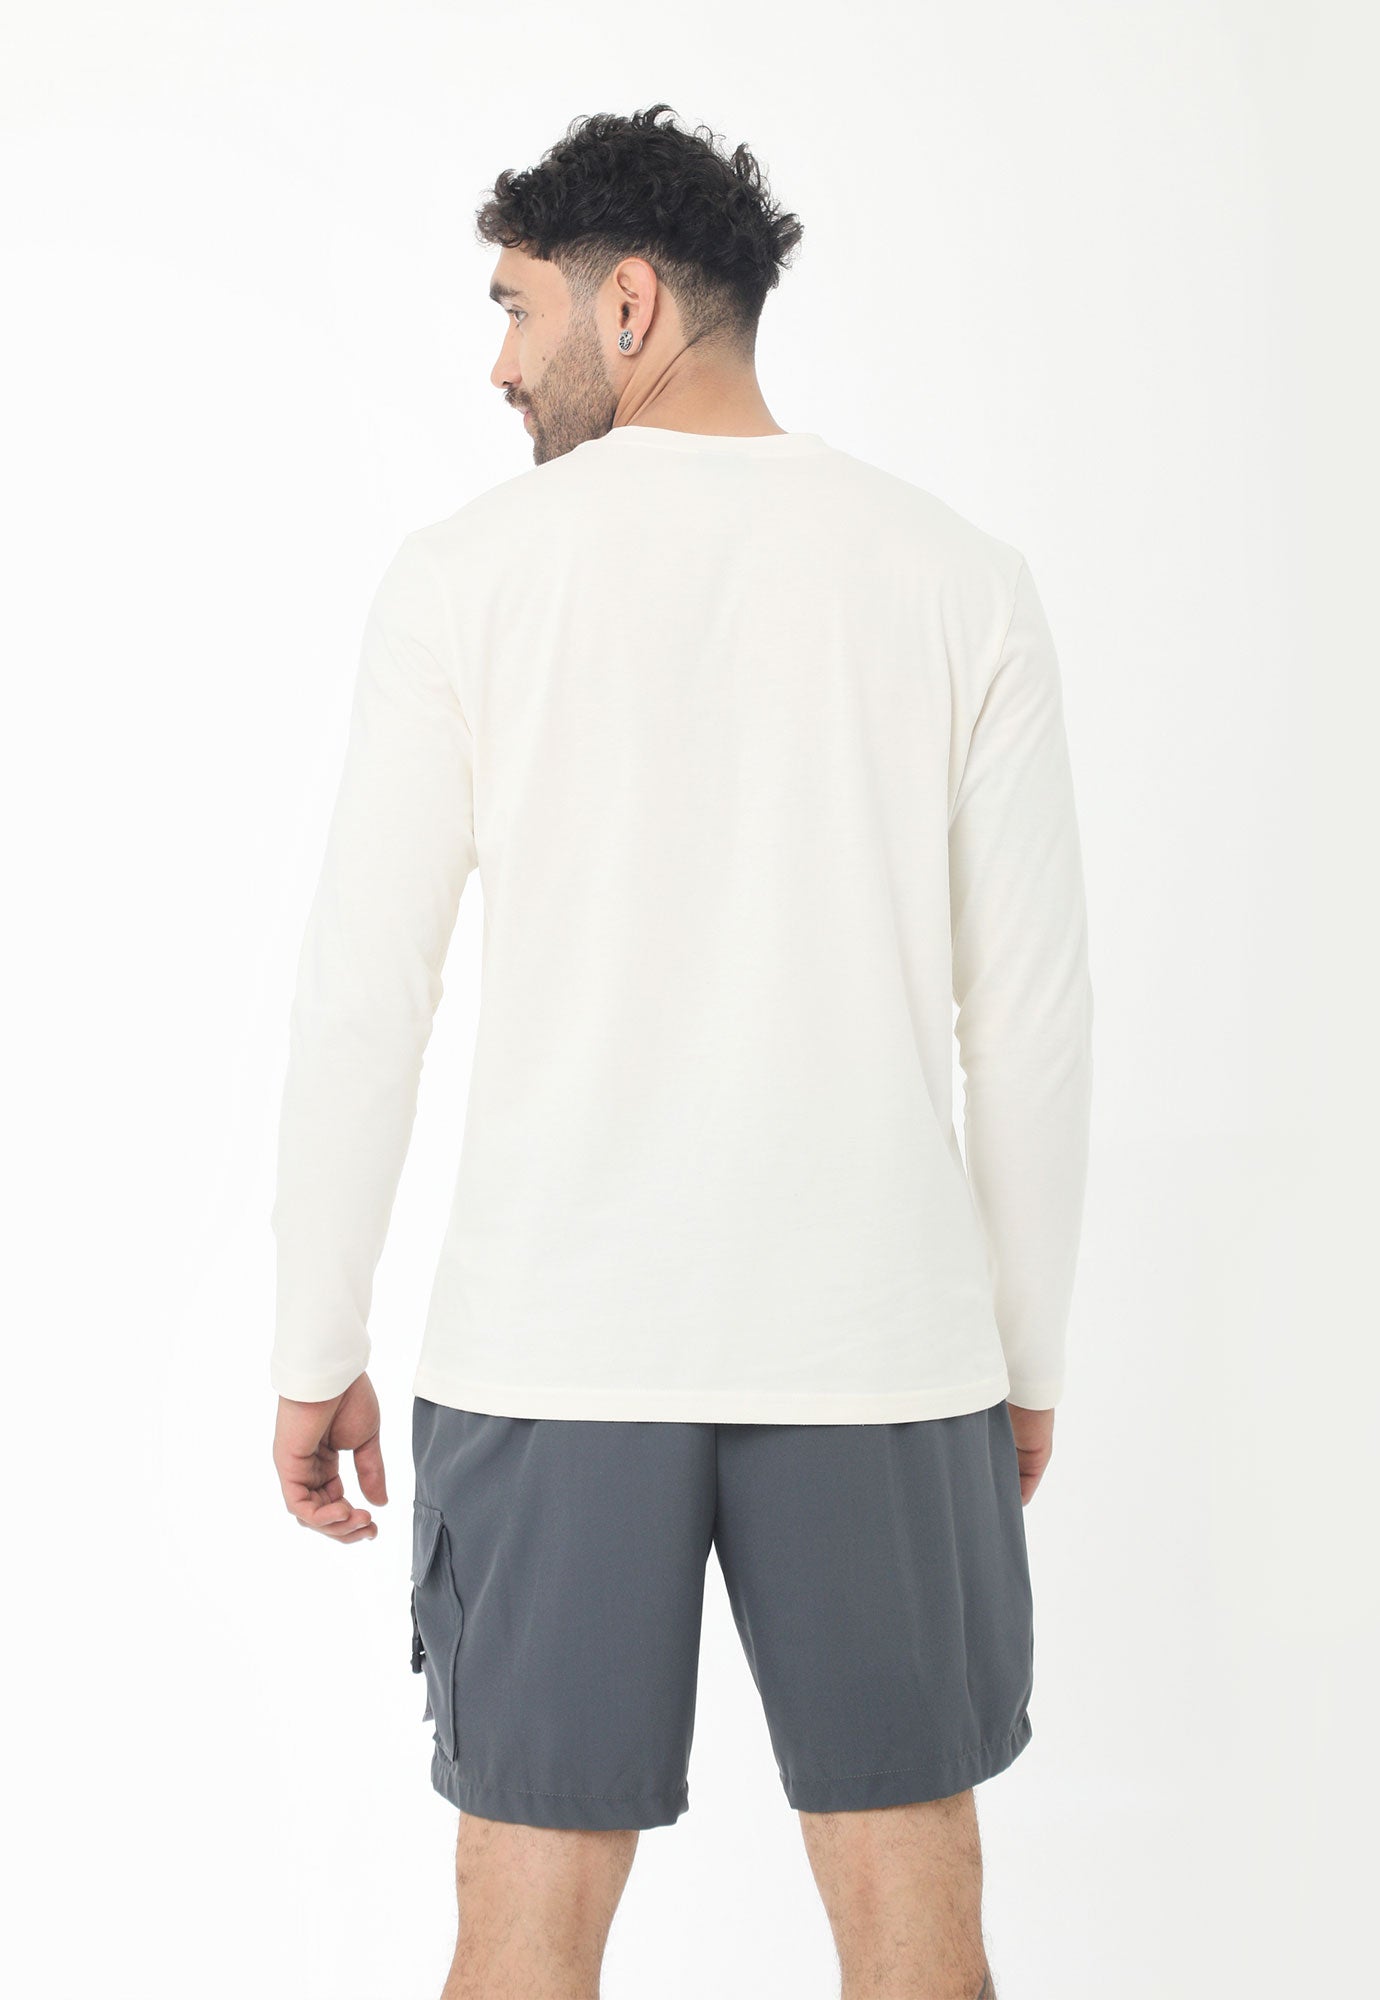 Camiseta blanca manga larga, cuello redondo, con estampado en frente y en manga izquierda para hombre